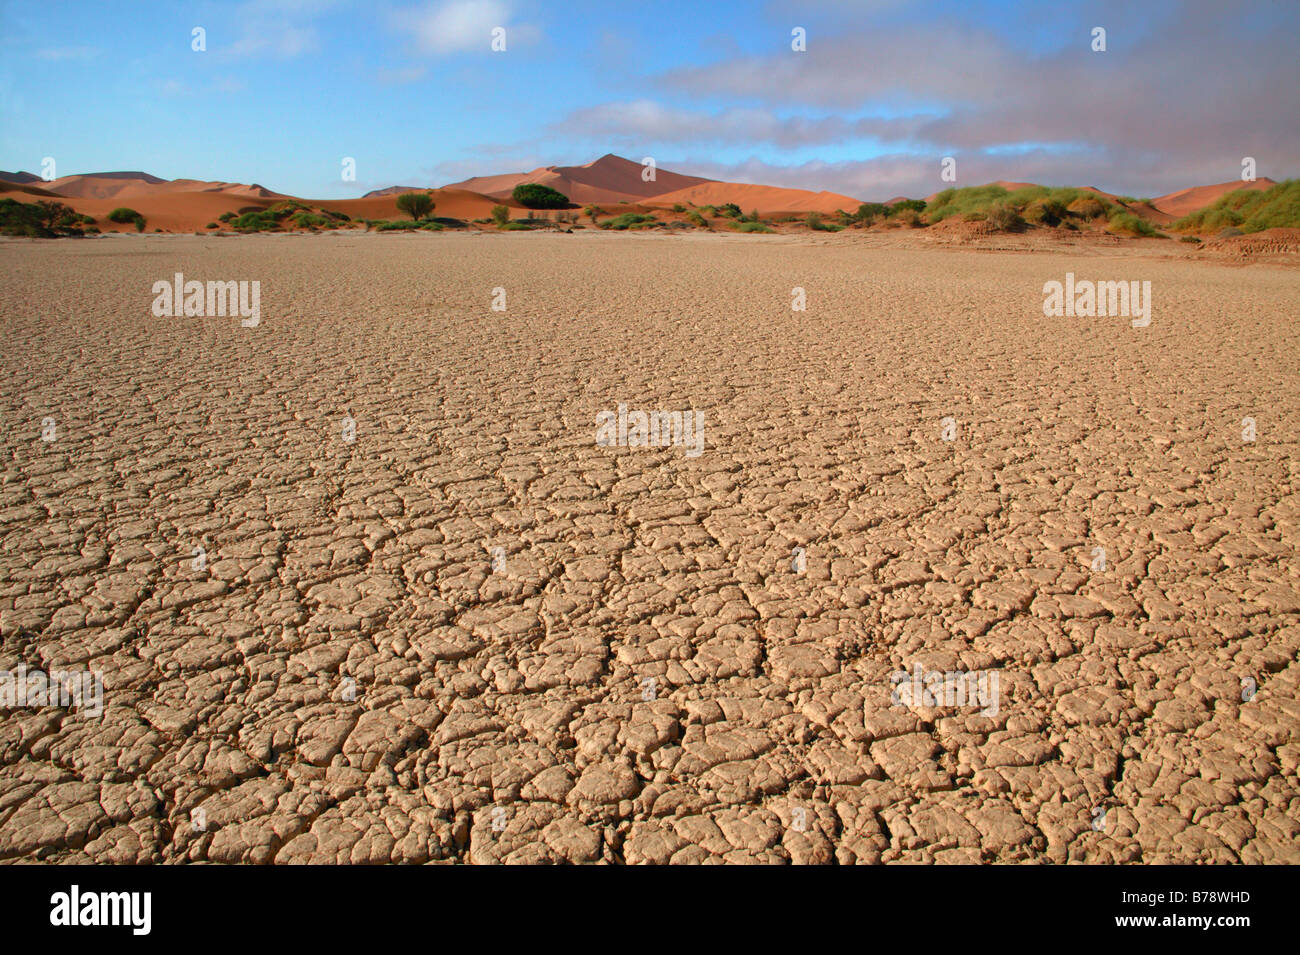 Cracked earth dans un endroit sec, pan de faible altitude menant vers les dunes de sable et désert dans la distance Banque D'Images